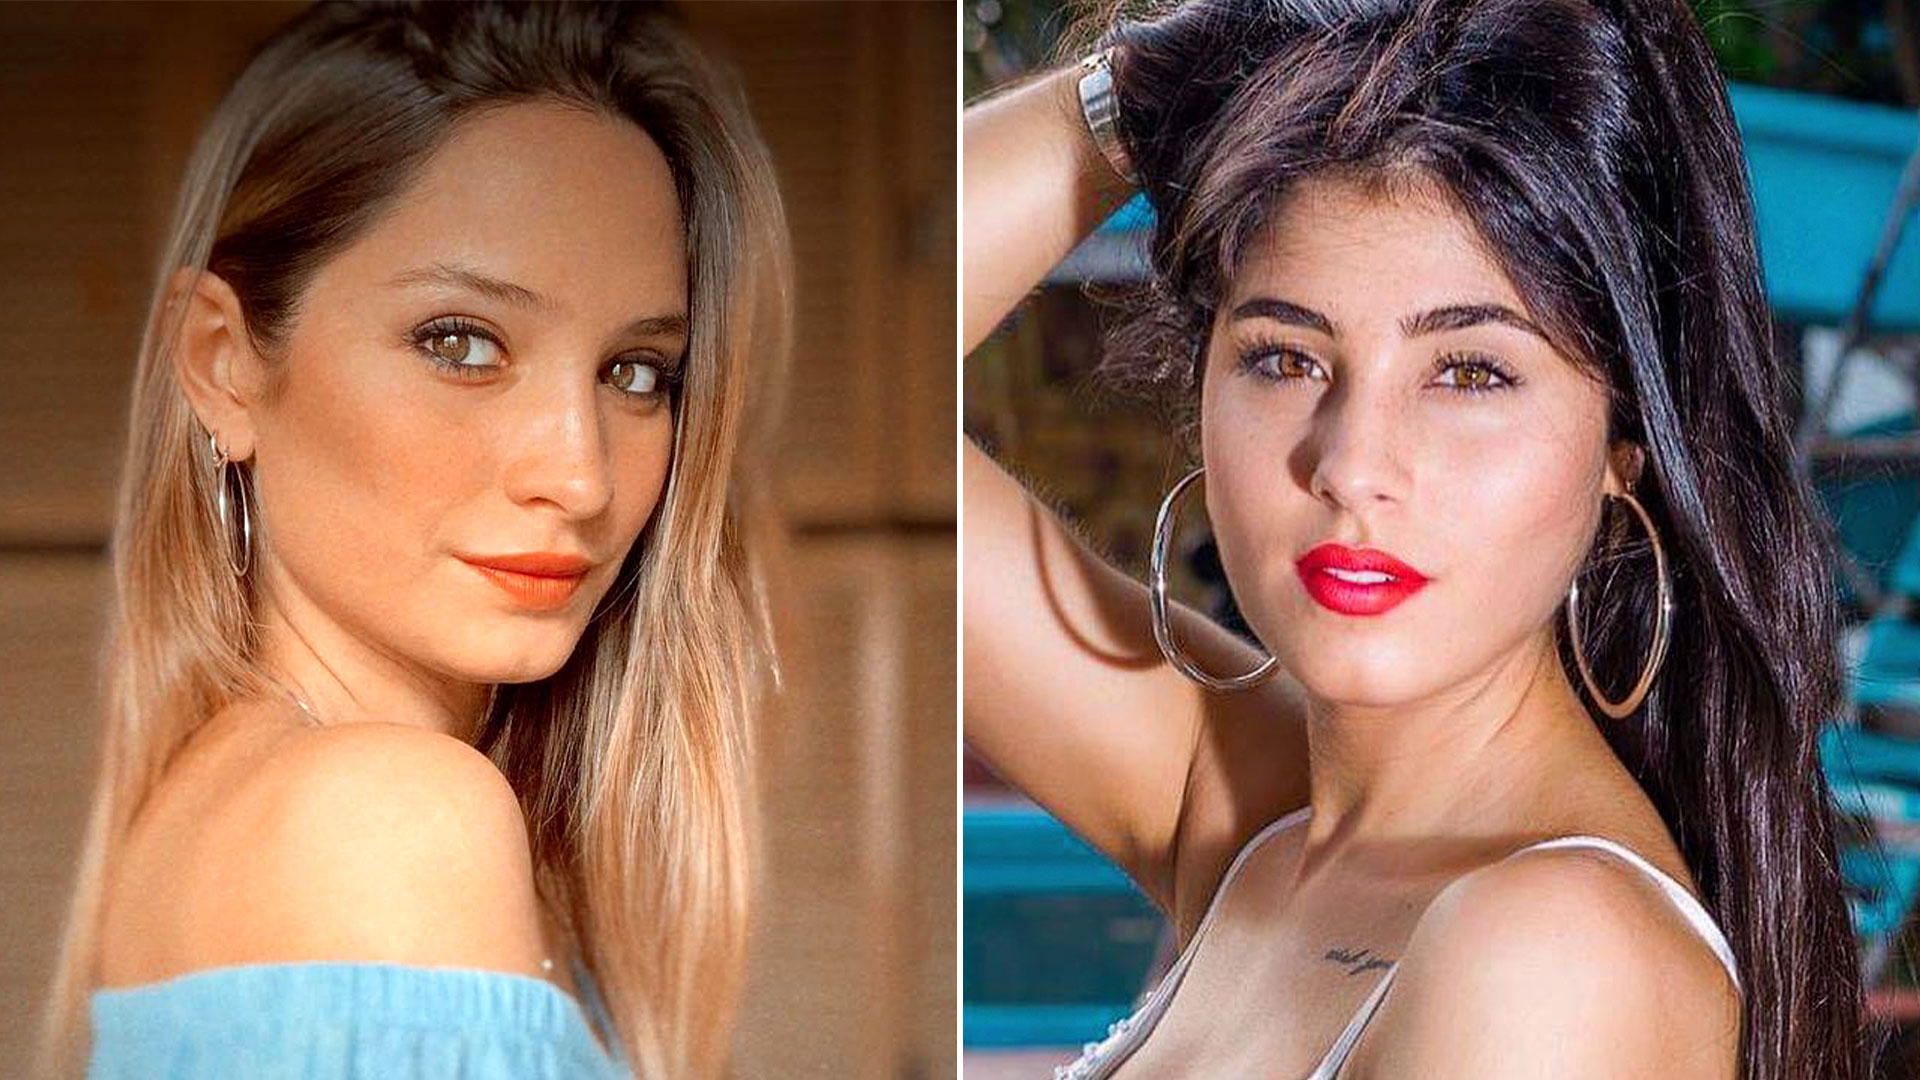 Micaela Trinidad y María Josefina Ferrero, las jóvenes modelos tenían 27 años